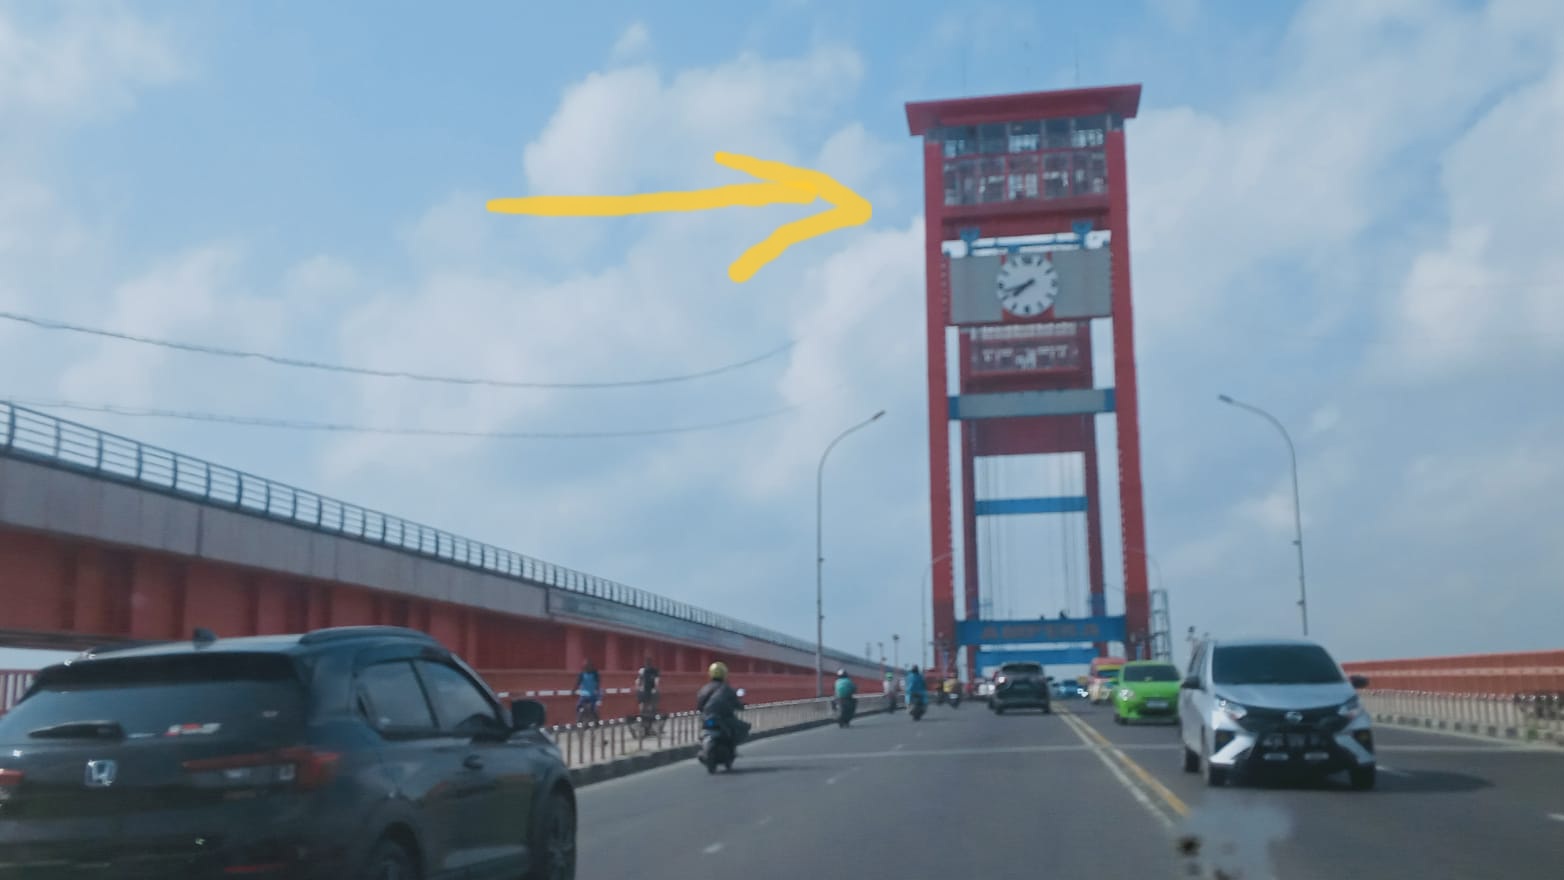 Wisata Tower Jembatan Ampera, Melihat Indahnya Kota 'Pempek' Palembang dari Ketinggian